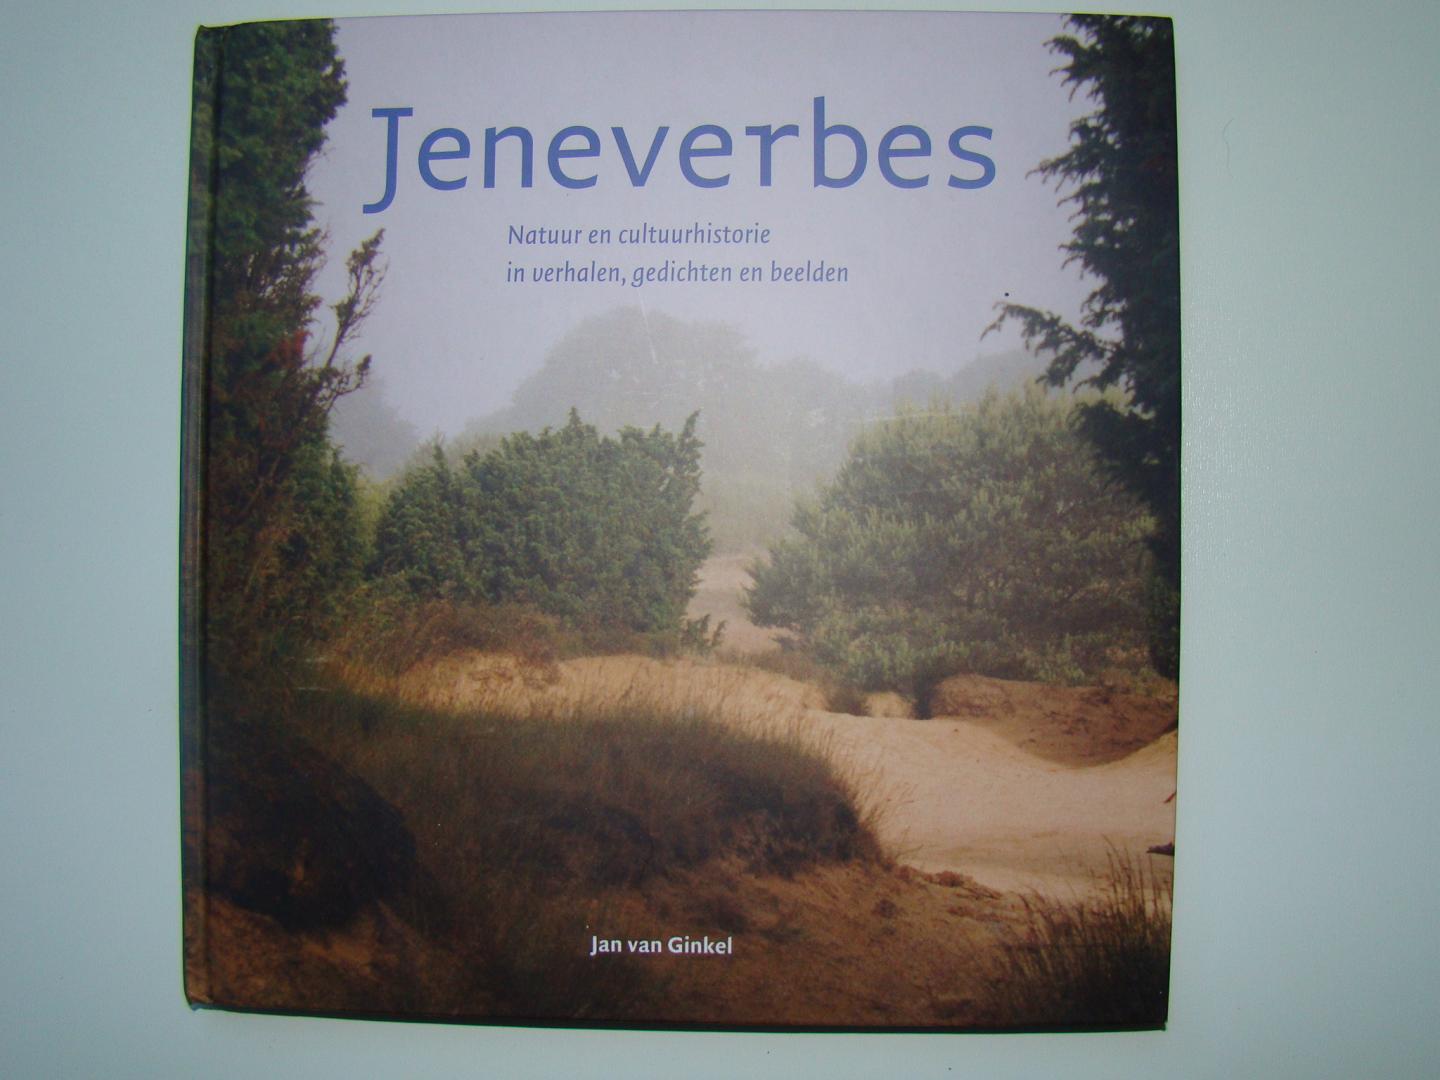 Ginkel, J. van - Jeneverbes / druk 1 - Natuur en cultuurhistorie in verhalen, gedichten en beelden